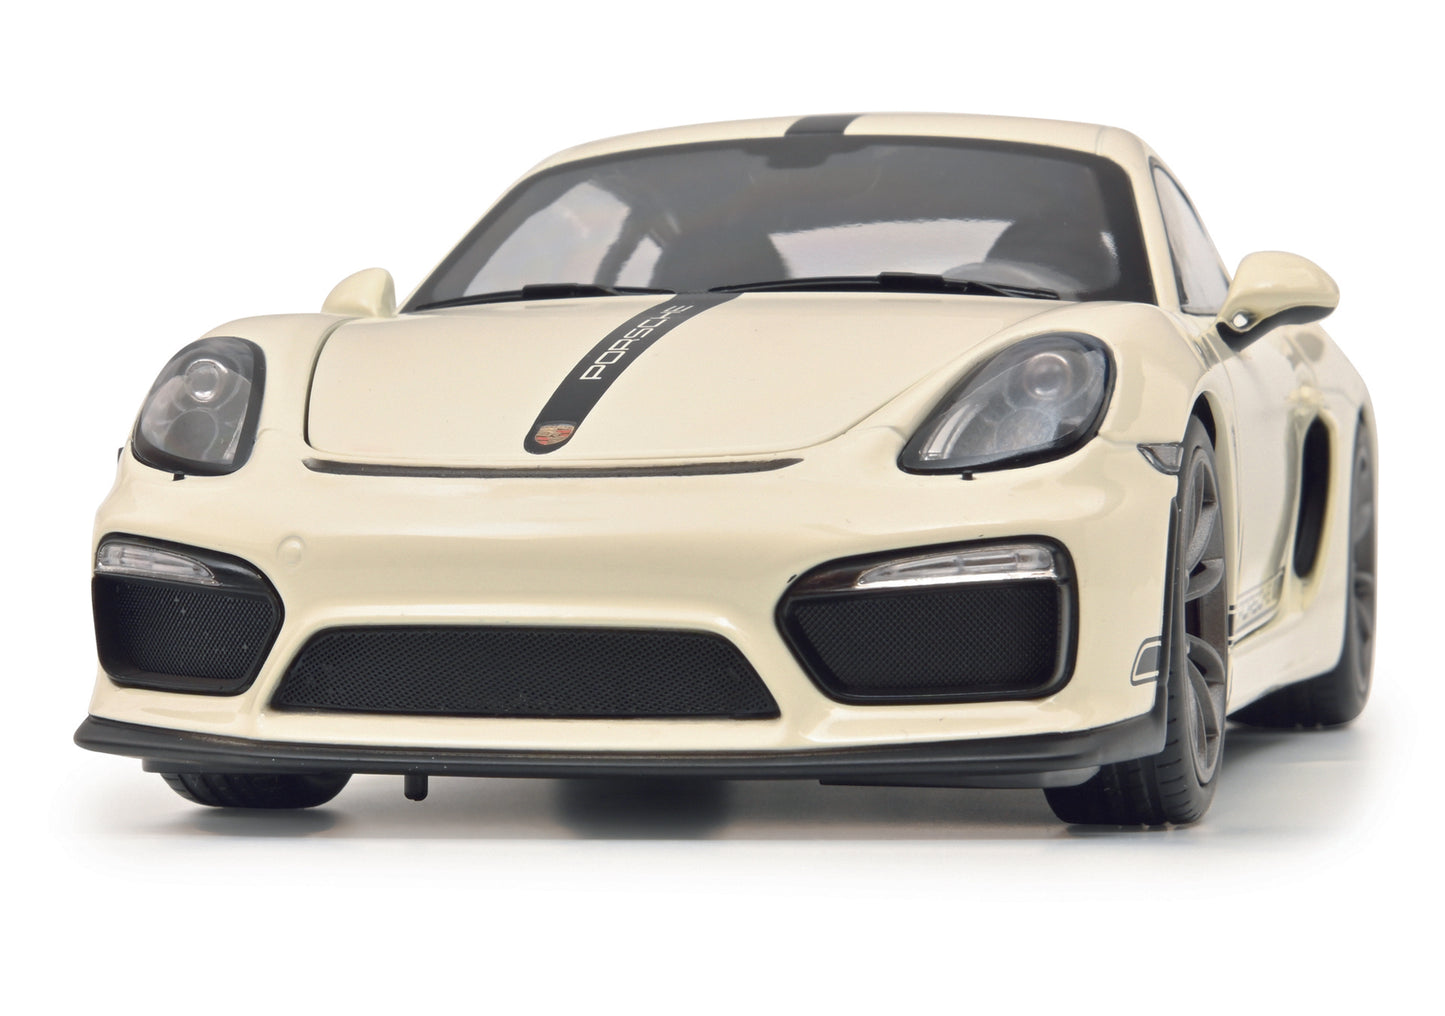 Schuco 450040500 - Porsche Cayman GT4 white 1:18 EAN: 4007864057566, at Ajckids.com, authorized Schuco dealer for the USA.